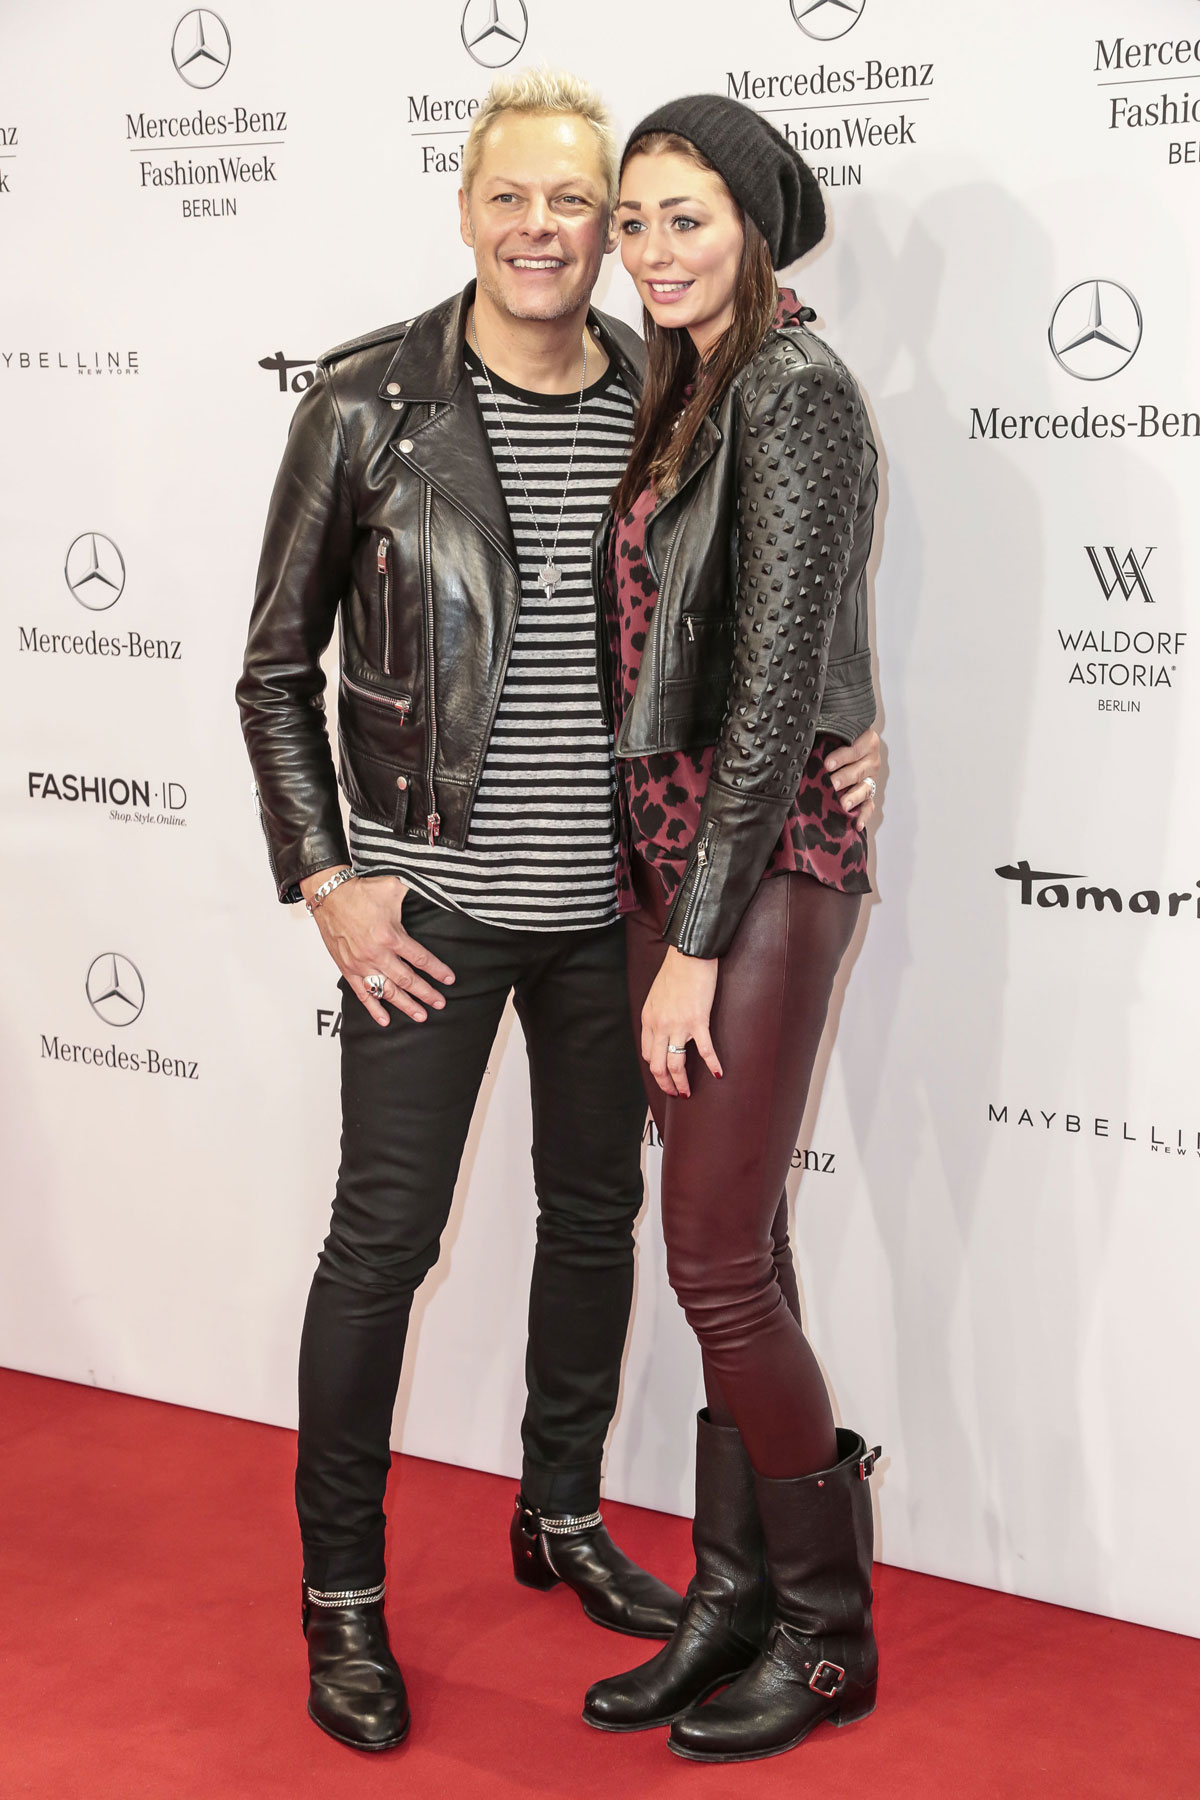 Fee Fahrenkrog Petersen attends Mercedes-Benz Fashion Week